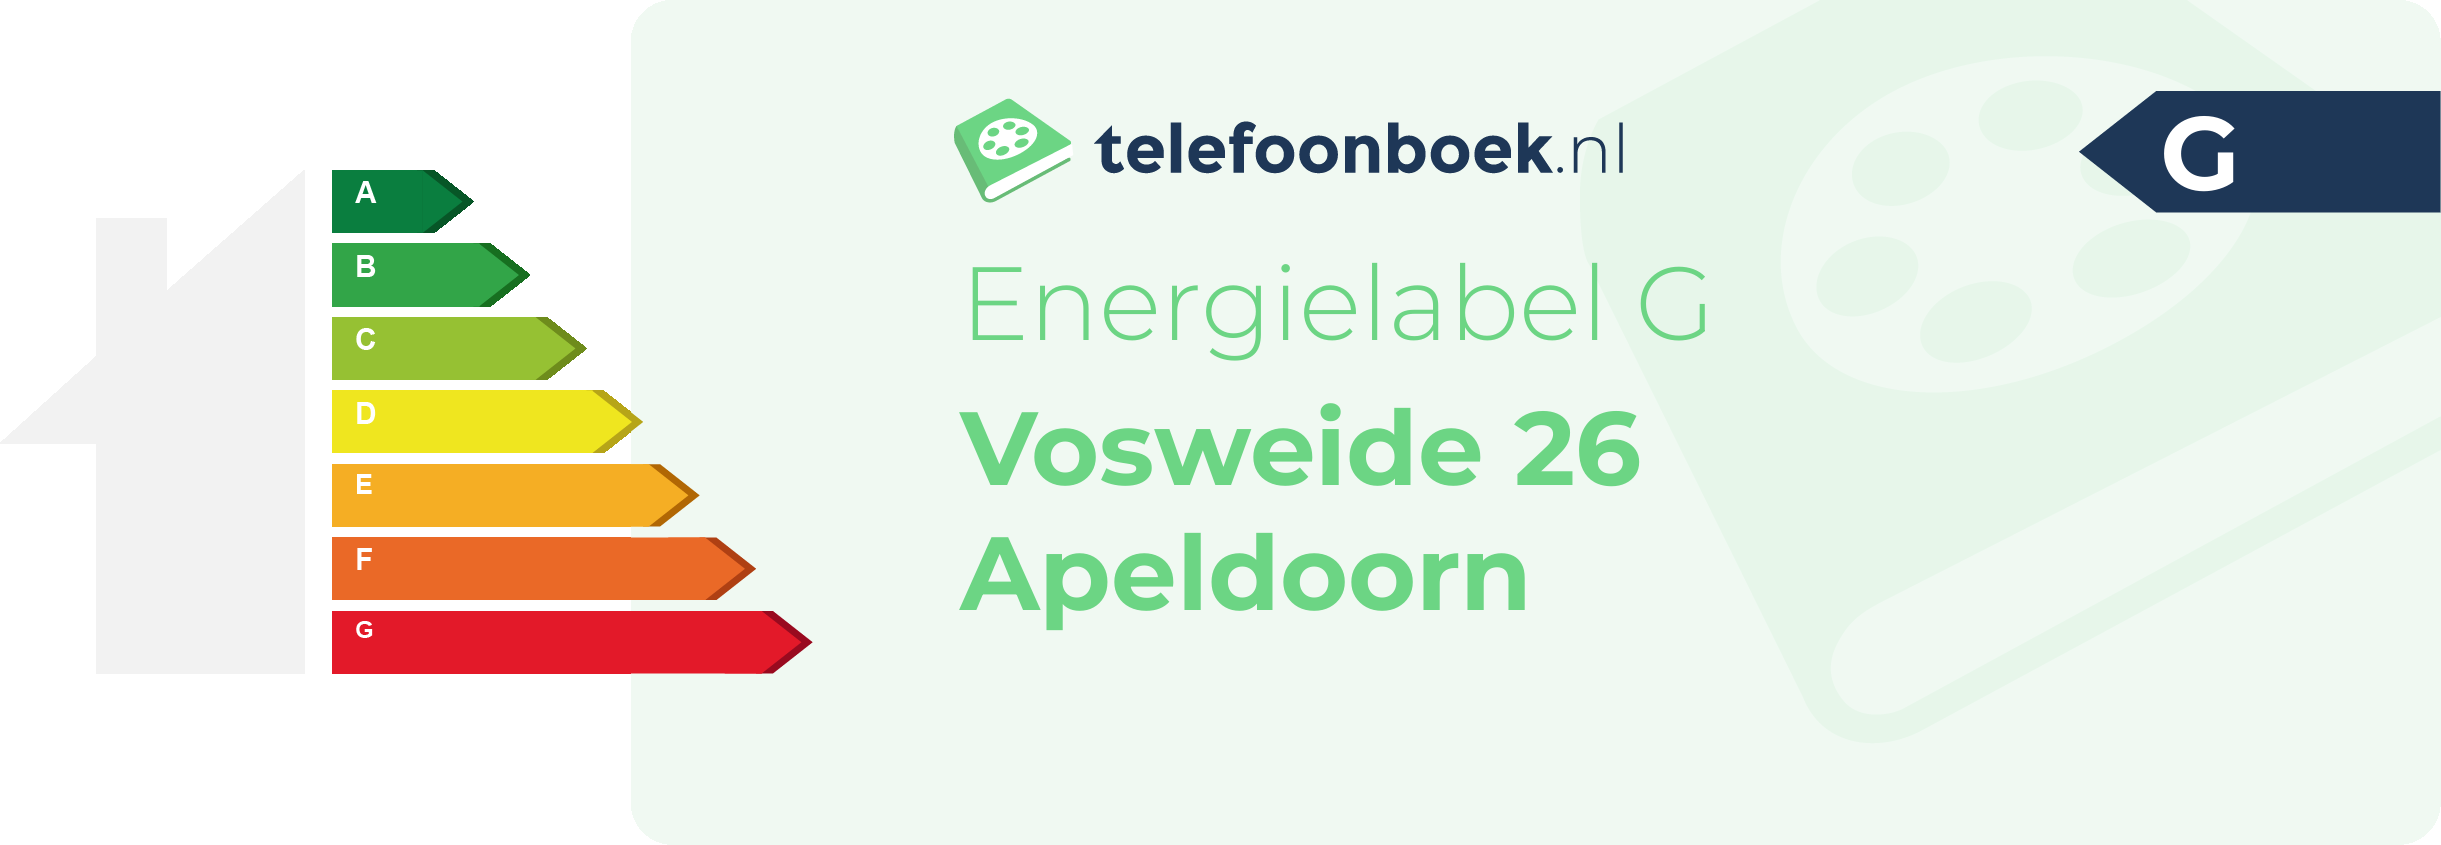 Energielabel Vosweide 26 Apeldoorn